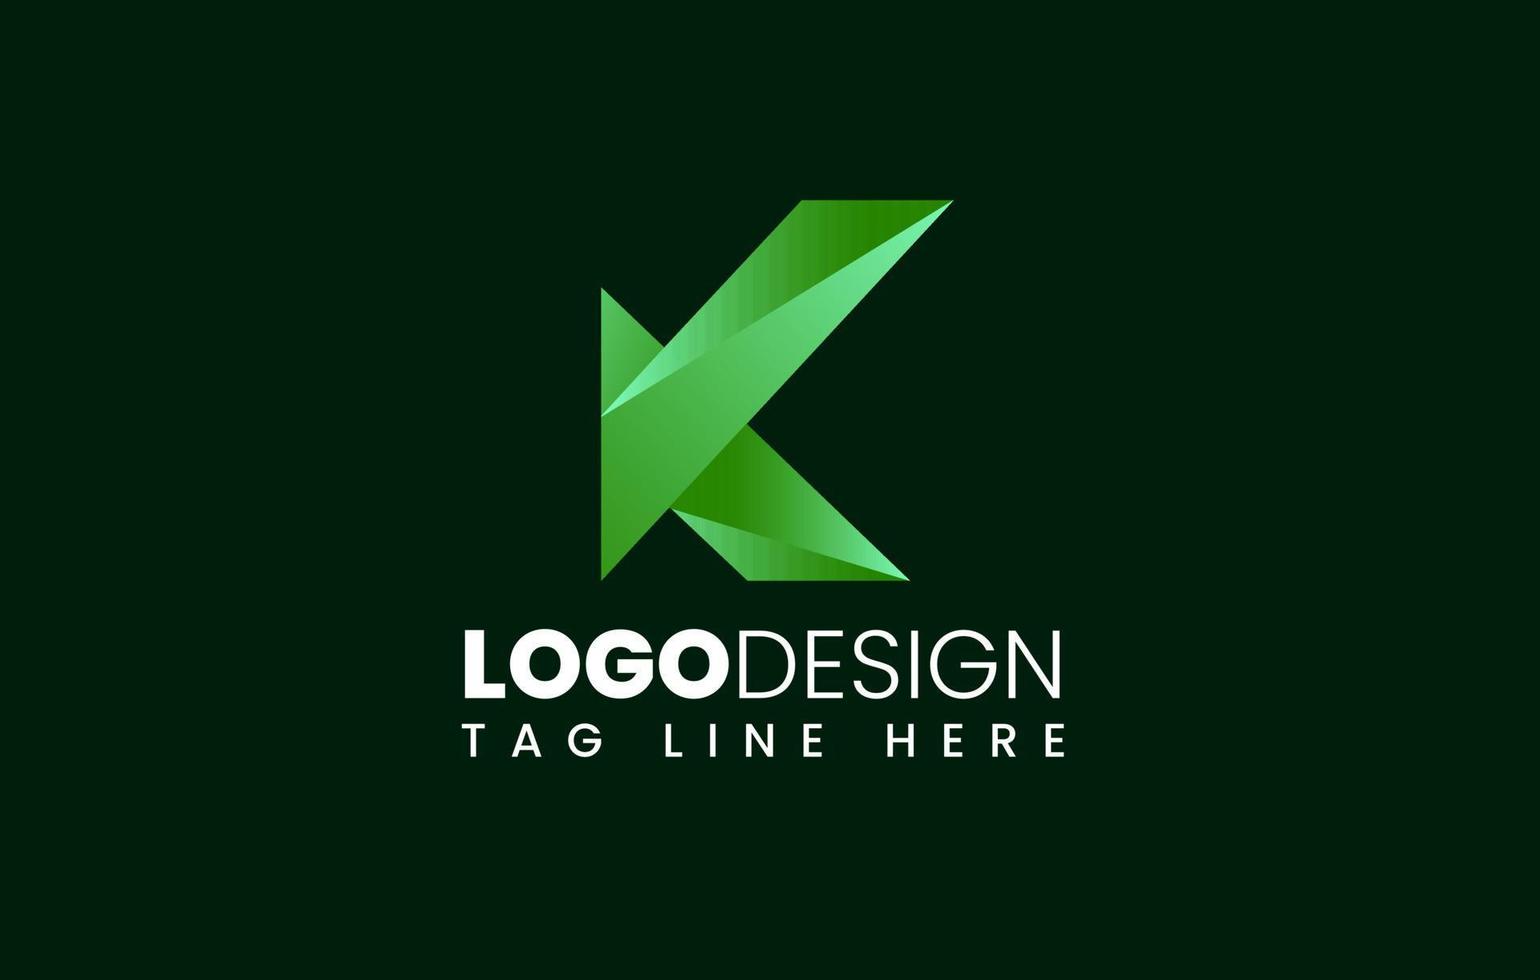 Farbverlauf k-Logo, grünes k-Logo oder Buchstabe k abstraktes Logo-Design vektor